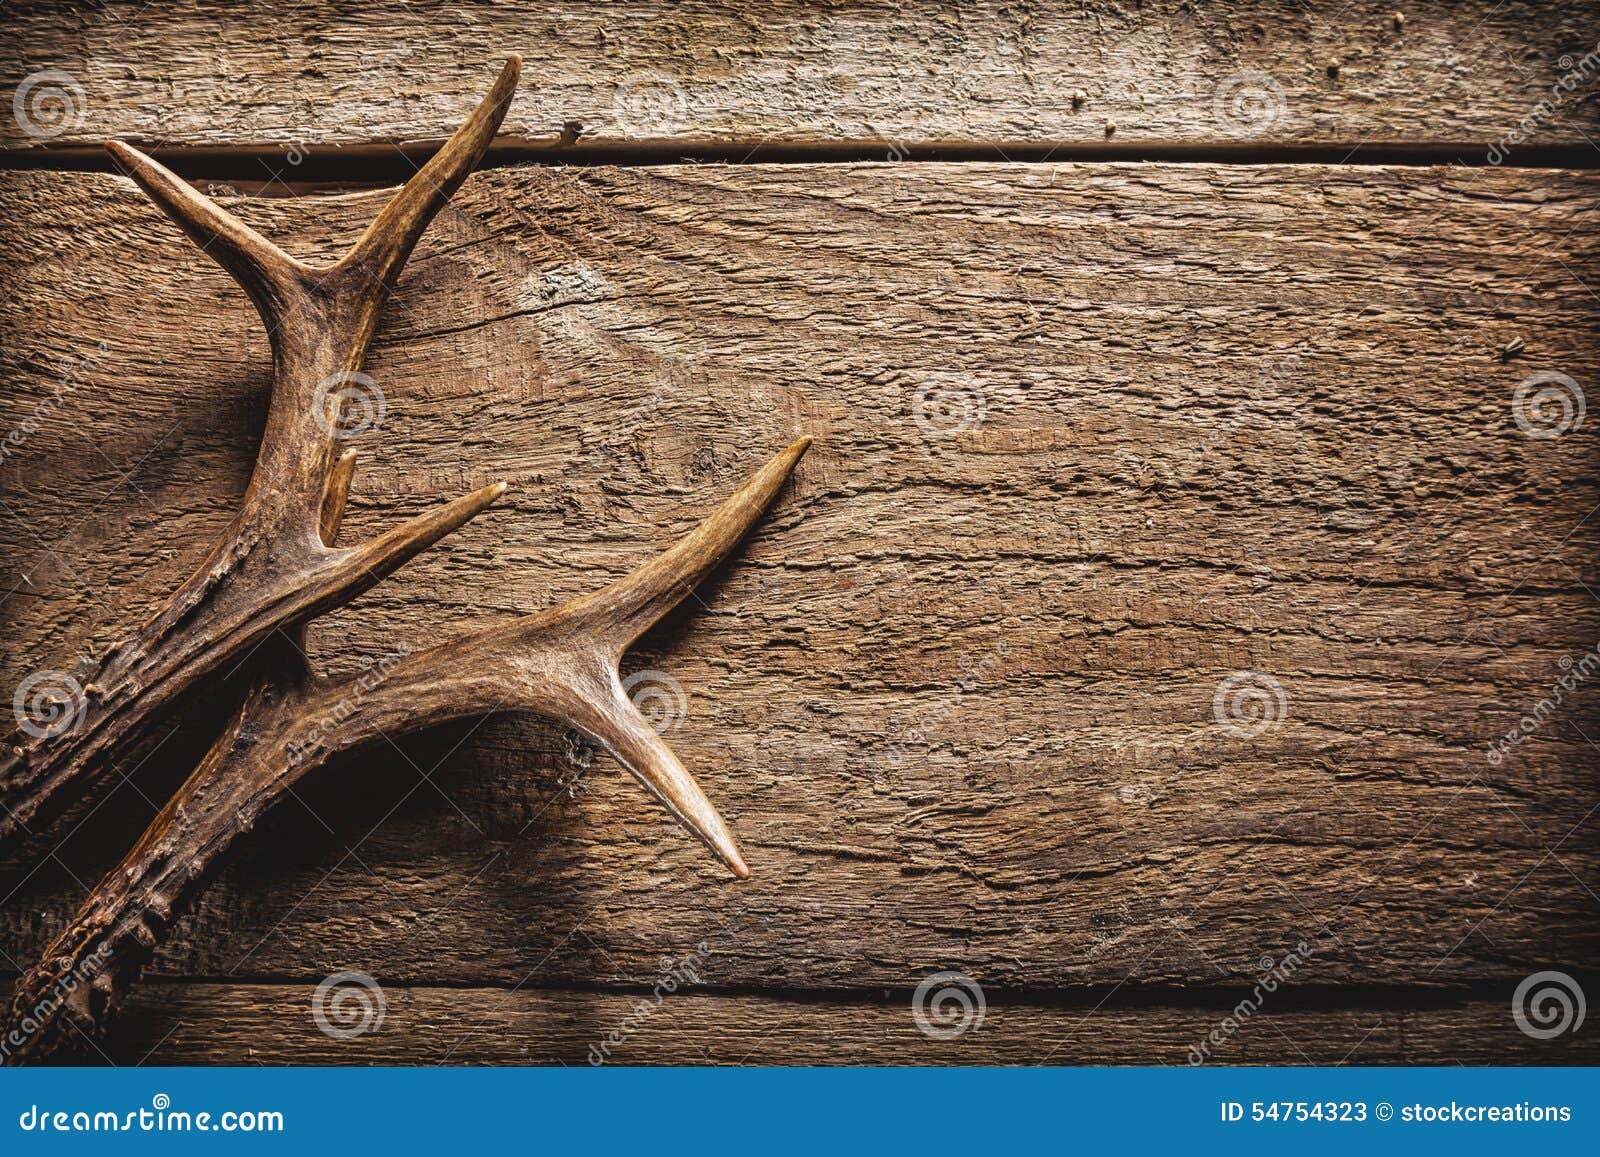 deer antlers on wooden surface